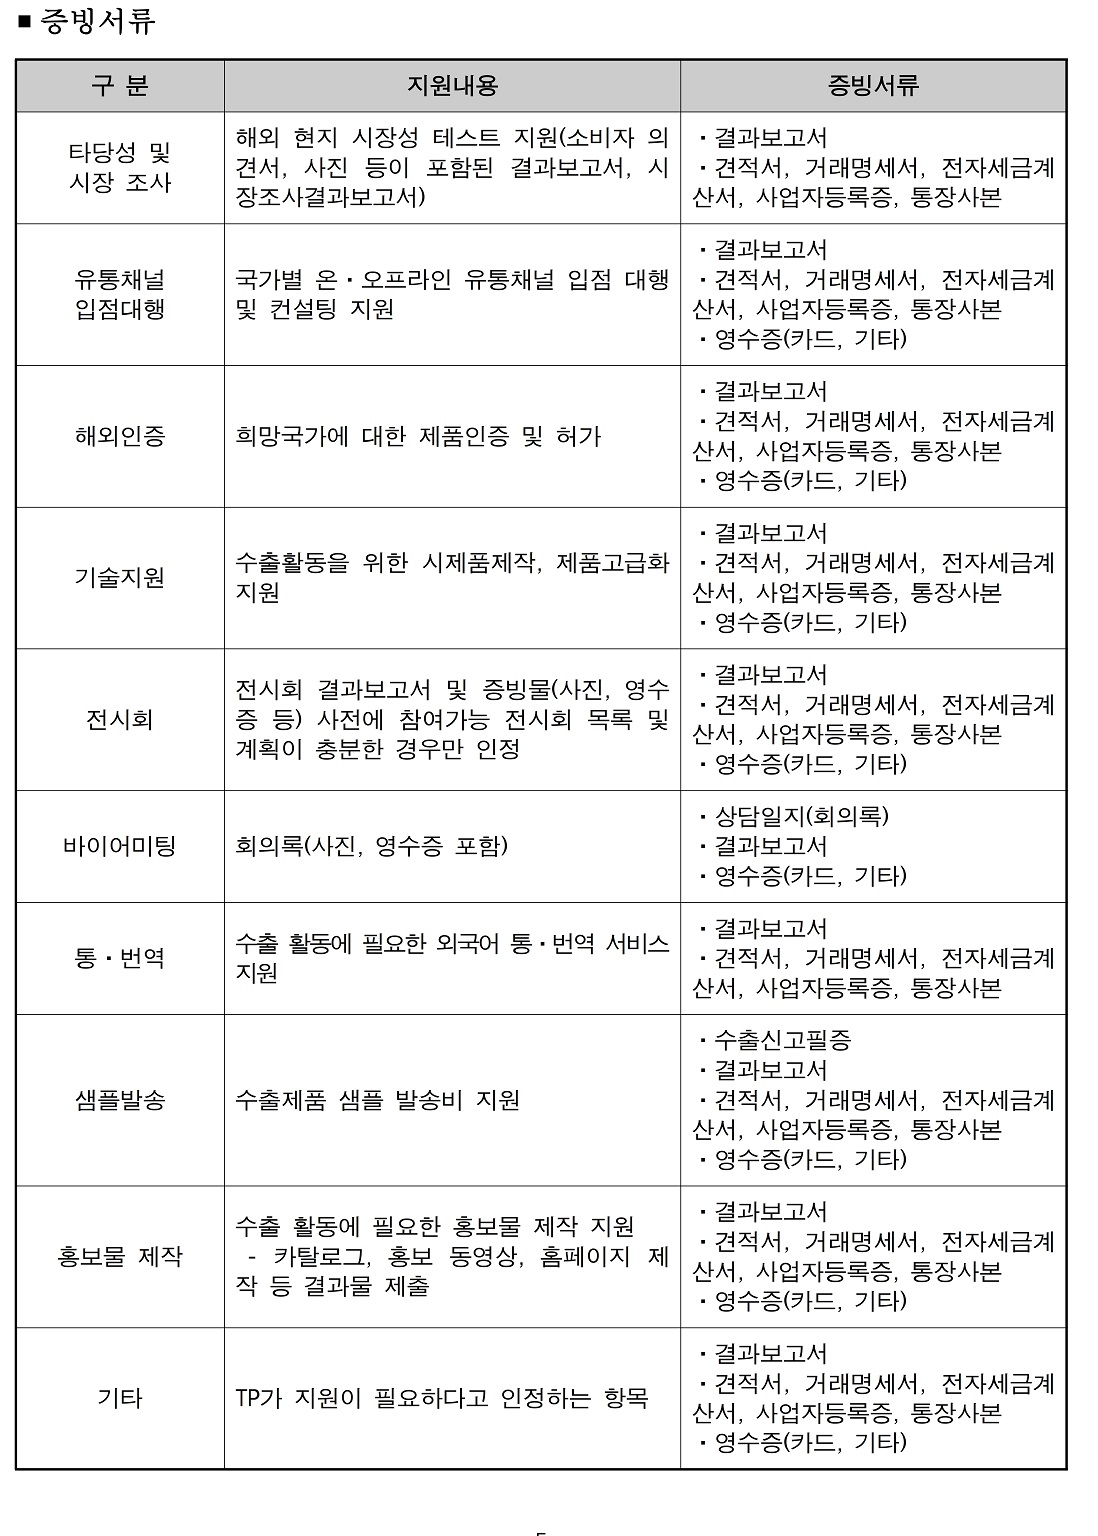 붙임1) 2021년 경북지역 지역특화산업 수출새싹기업지원사업 수혜기업 모집 공고문.pdf_page_5.jpg 이미지입니다.